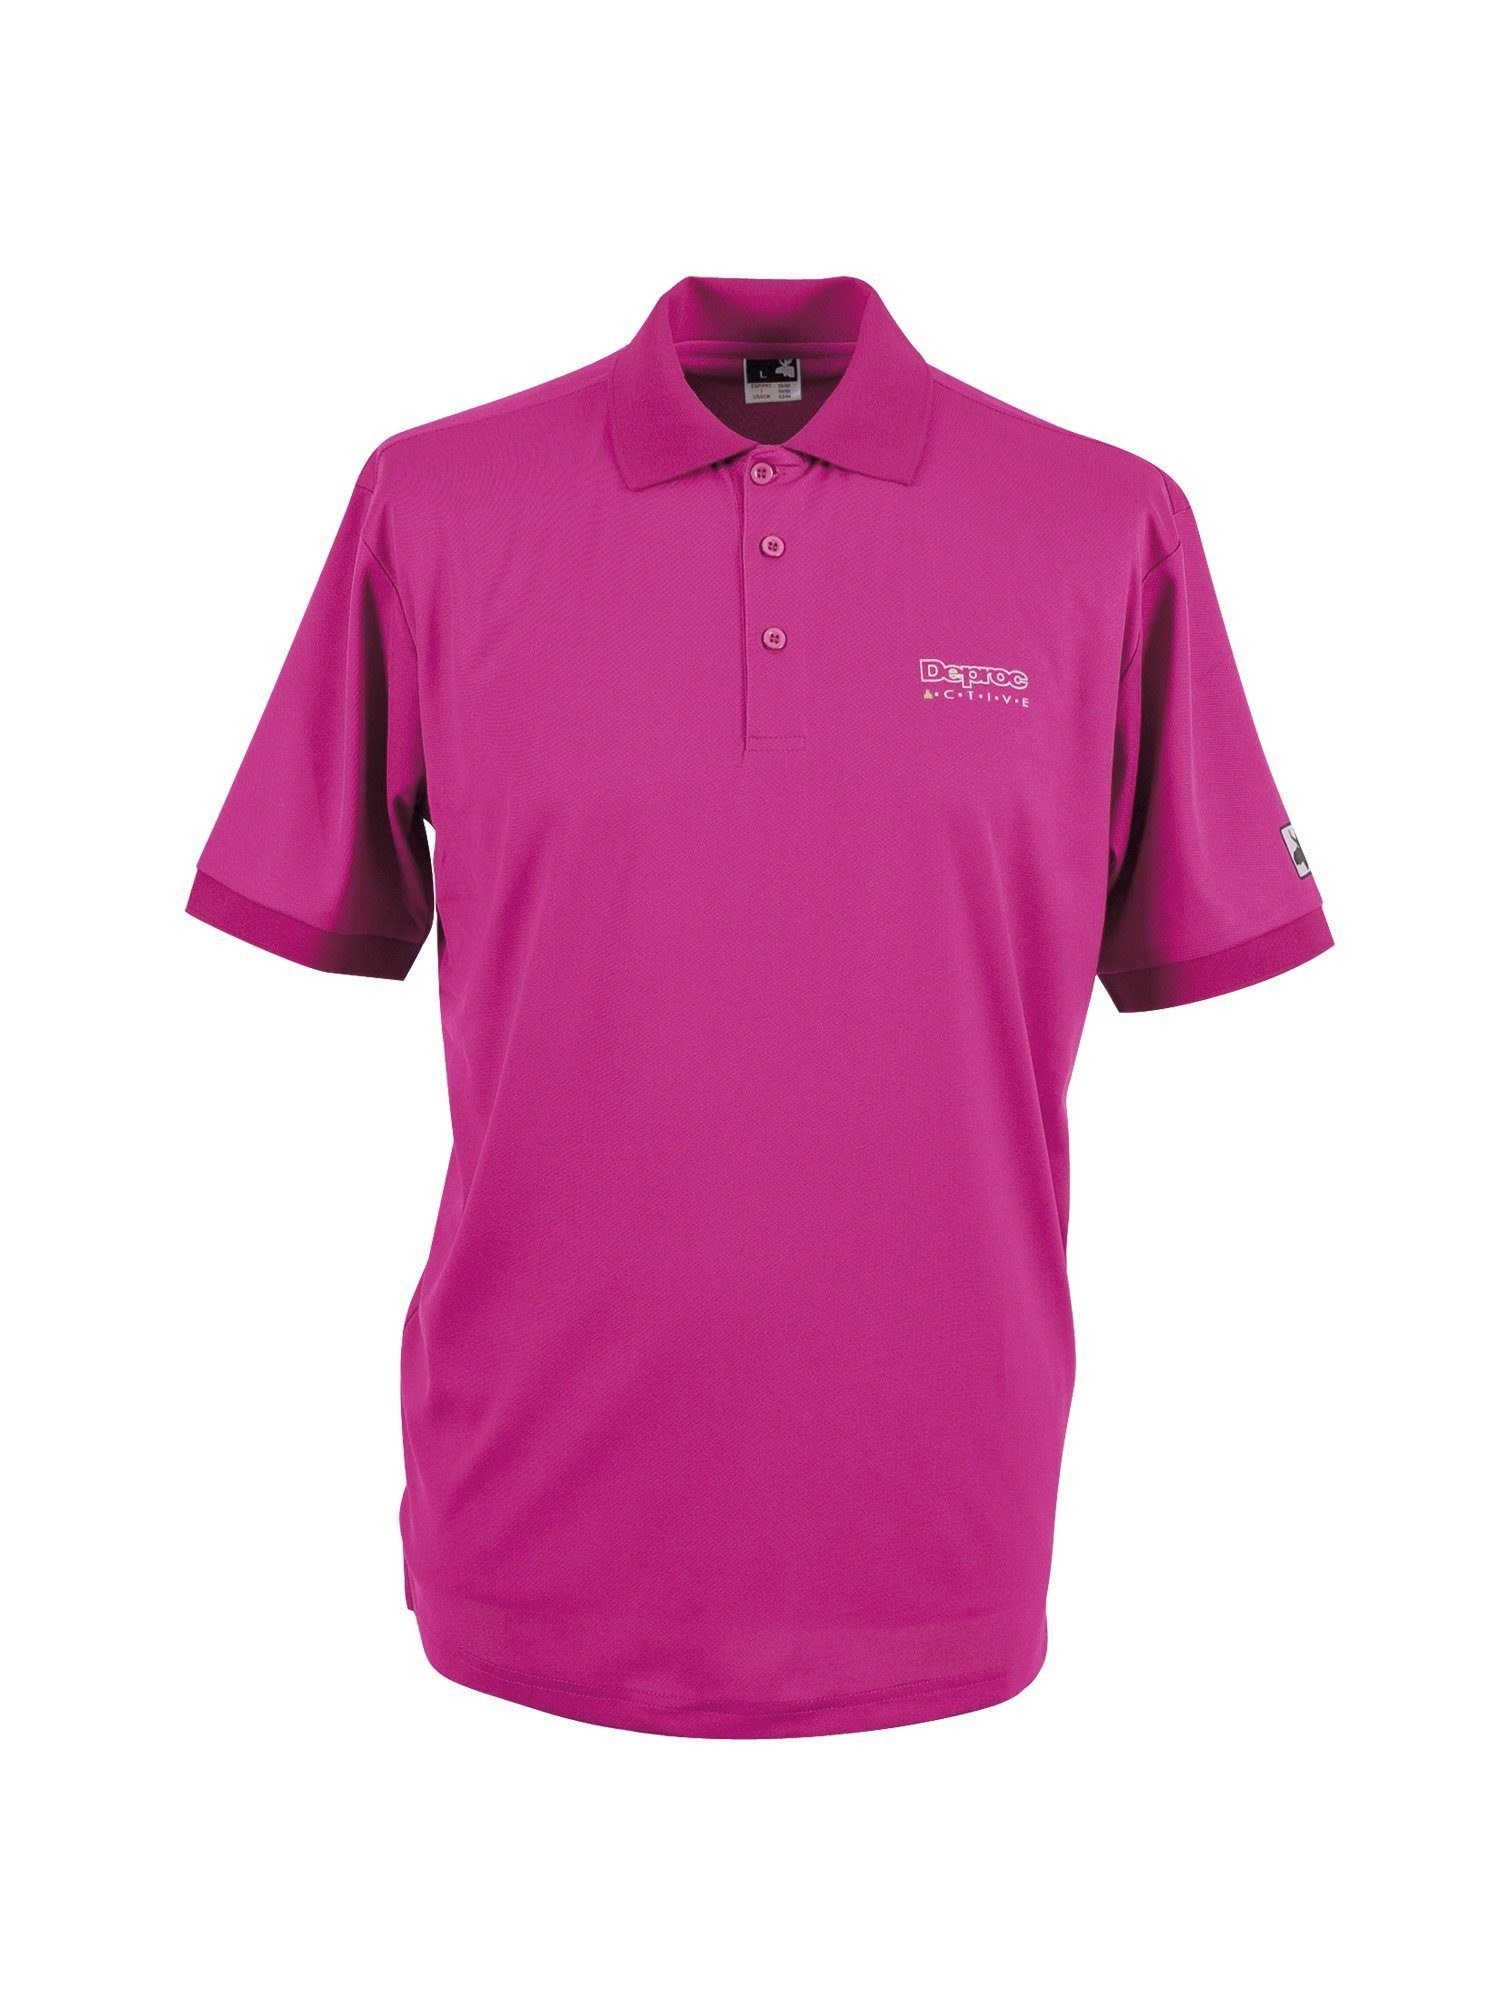 DEPROC Größen HEDLEY Active auch erhältlich in WOMEN Poloshirt Großen pink